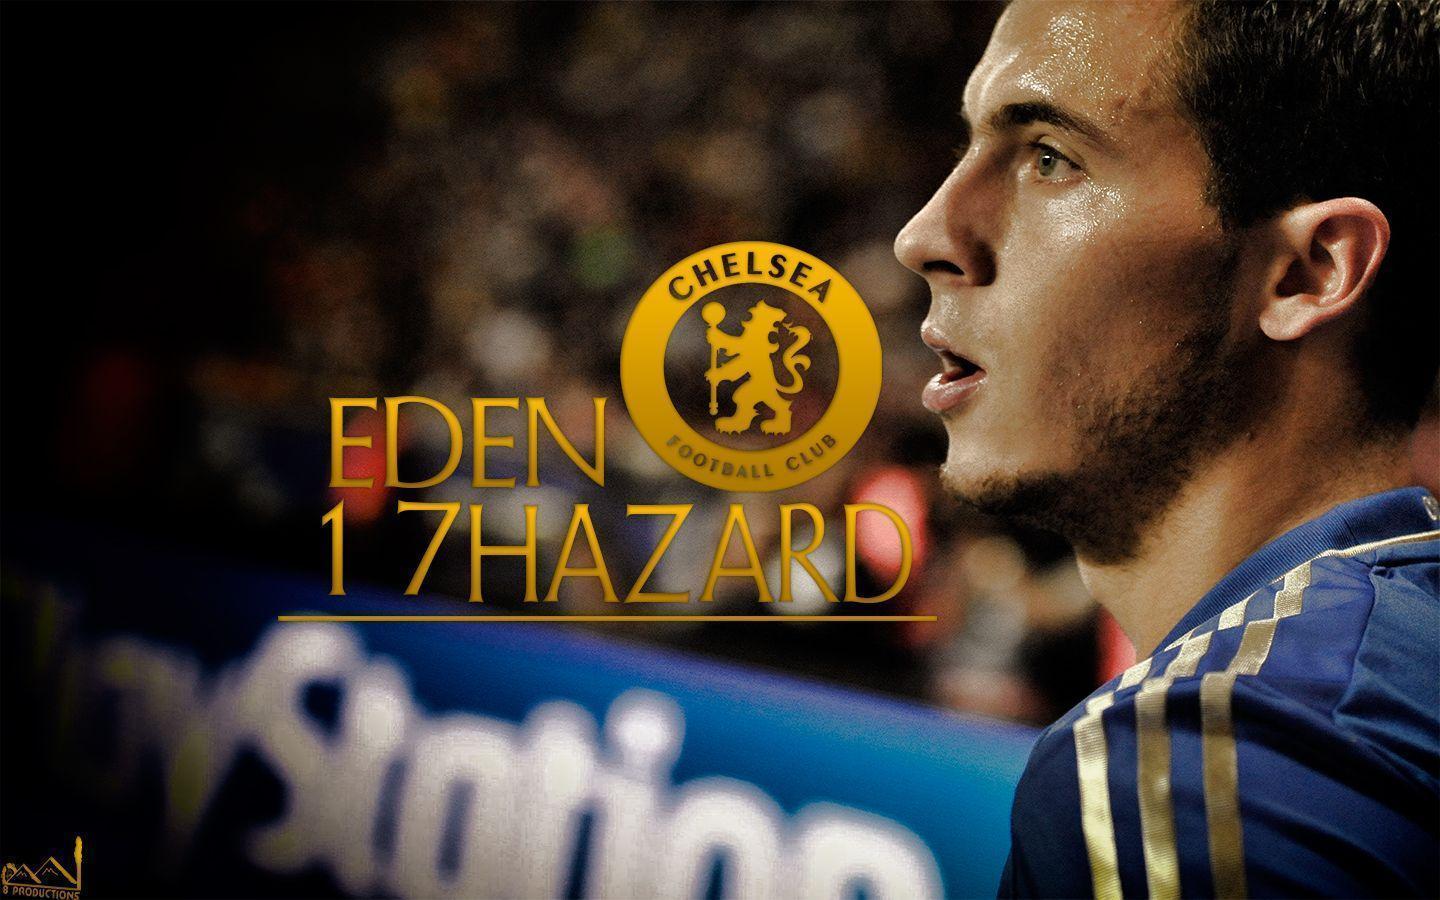 Eden hazard, Chelsea fc and HD wallpaper